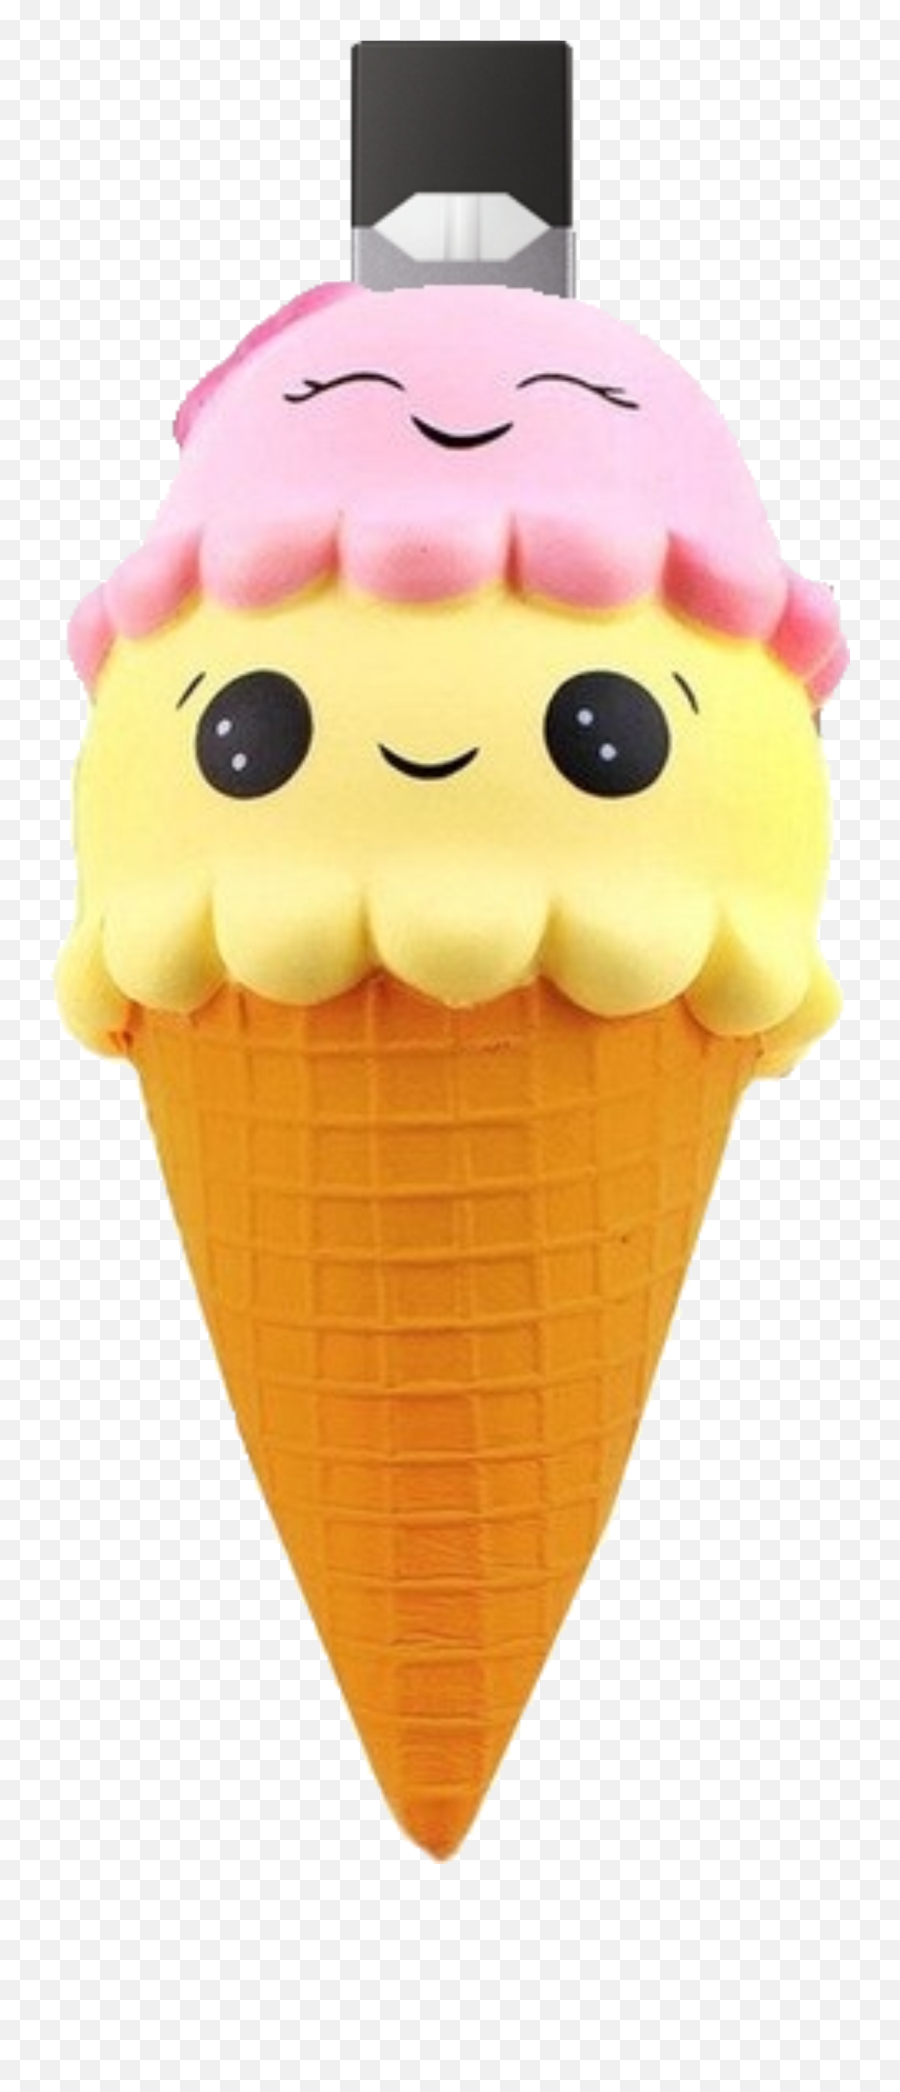 Cute Ice Cream Lazy Lampoon Keychain - Lazy Lampoon Emoji,Ice Cream Emoticon